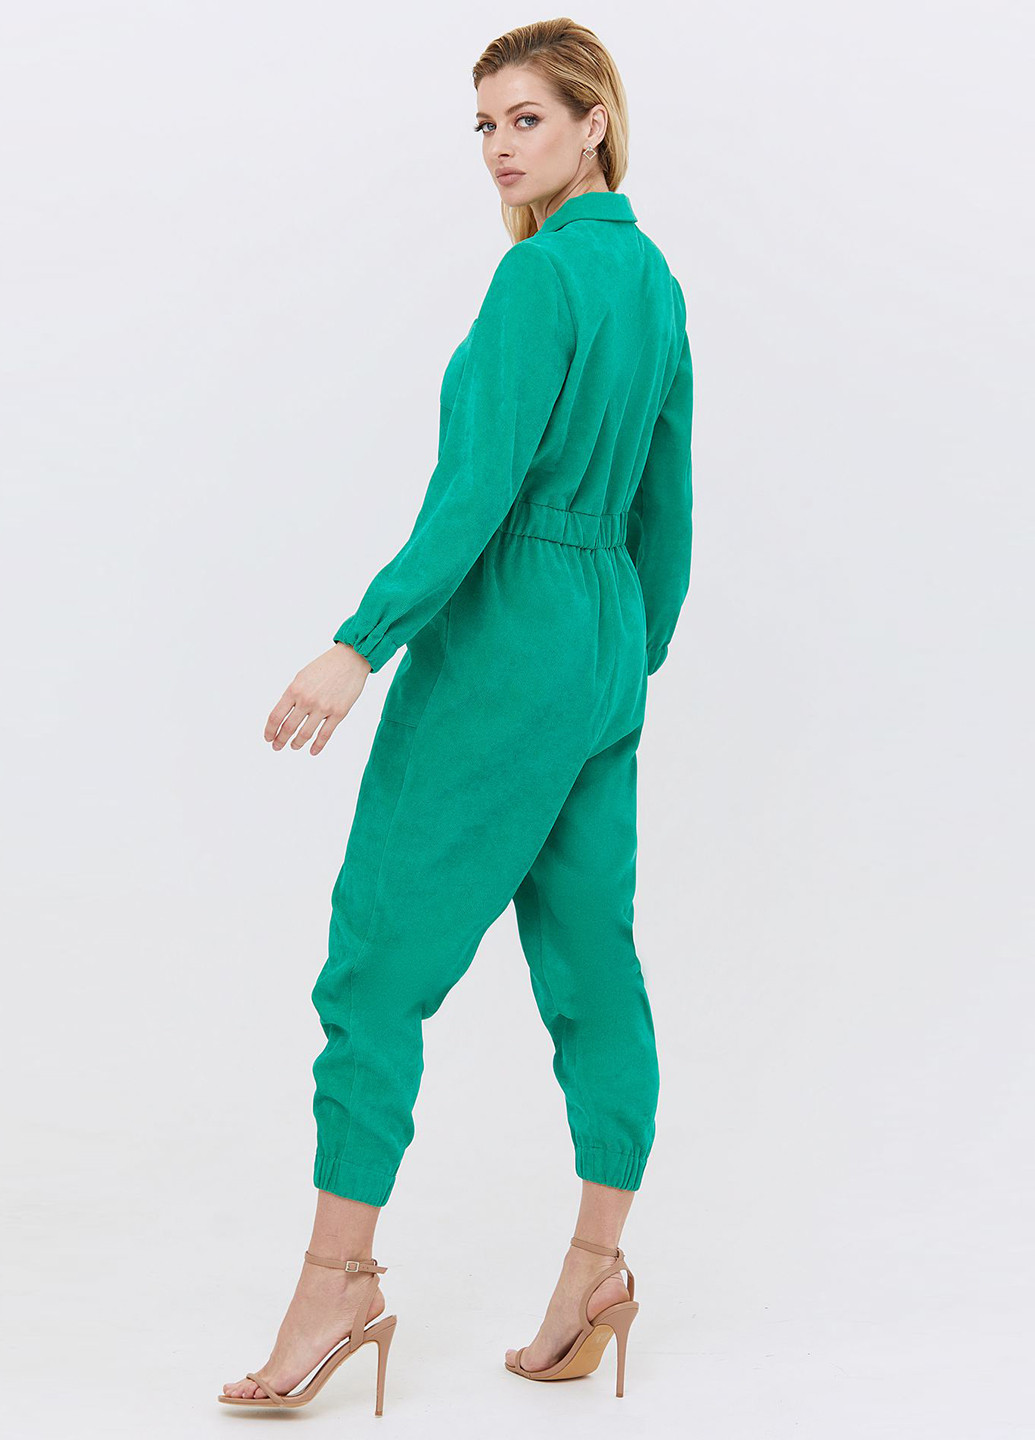 Комбинезон Vovk комбинезон-брюки однотонный зелёный кэжуал хлопок, вельвет